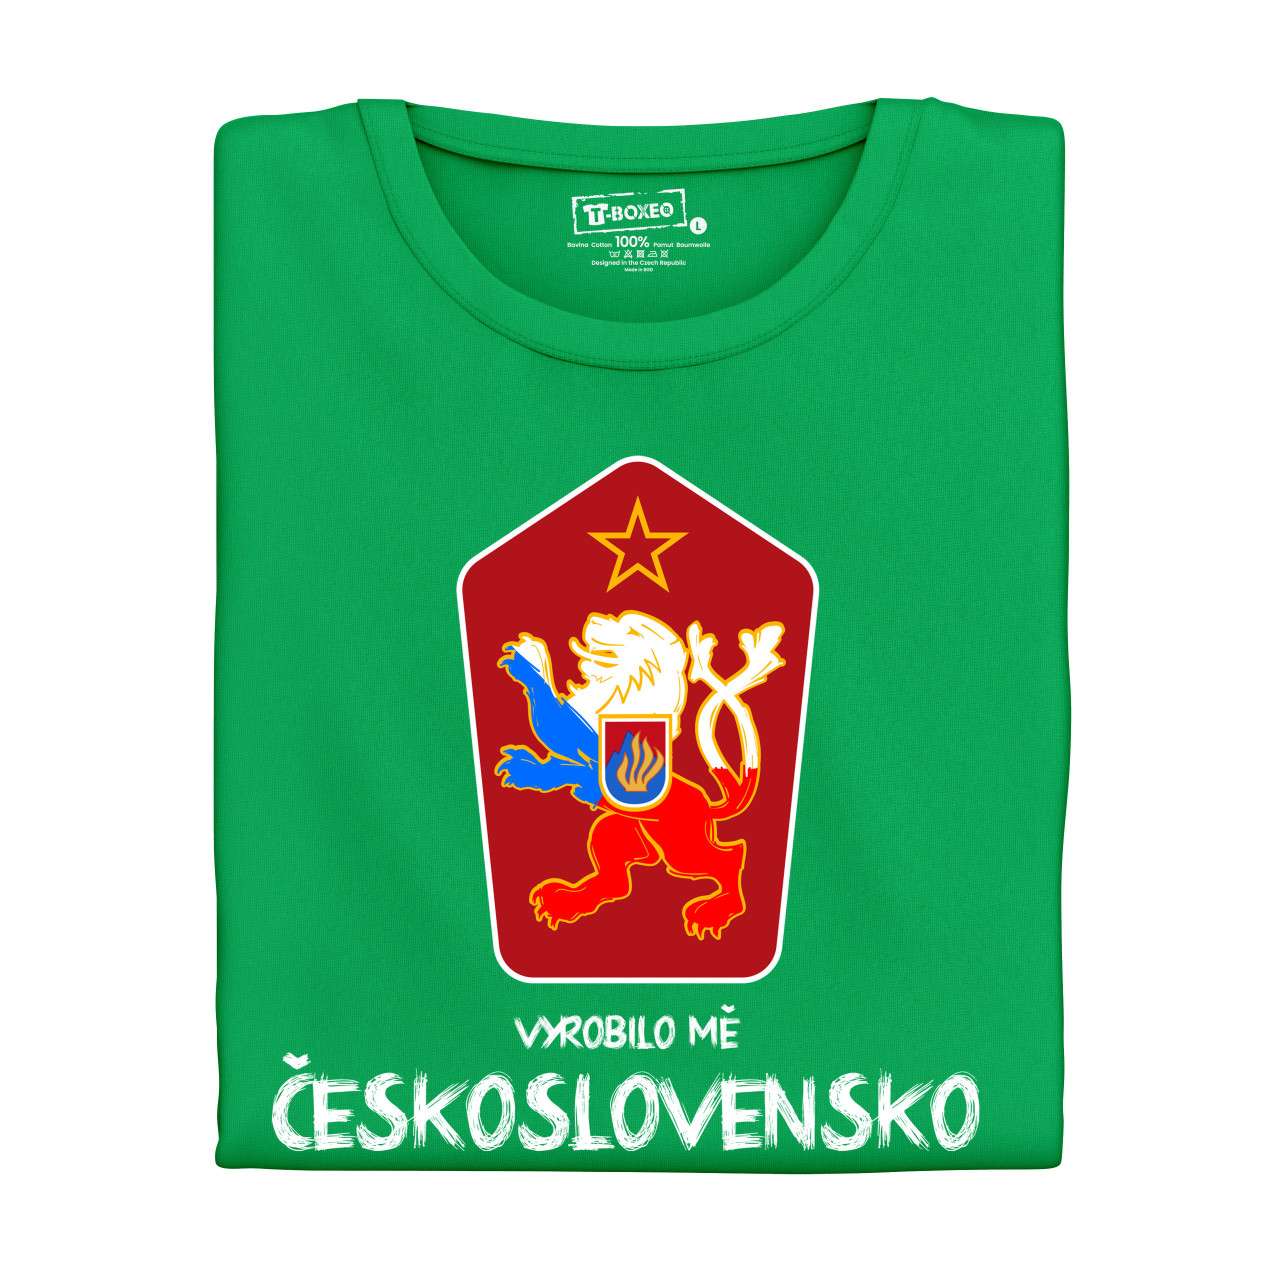 Dámské tričko s potiskem “Vyrobilo mě Československo”